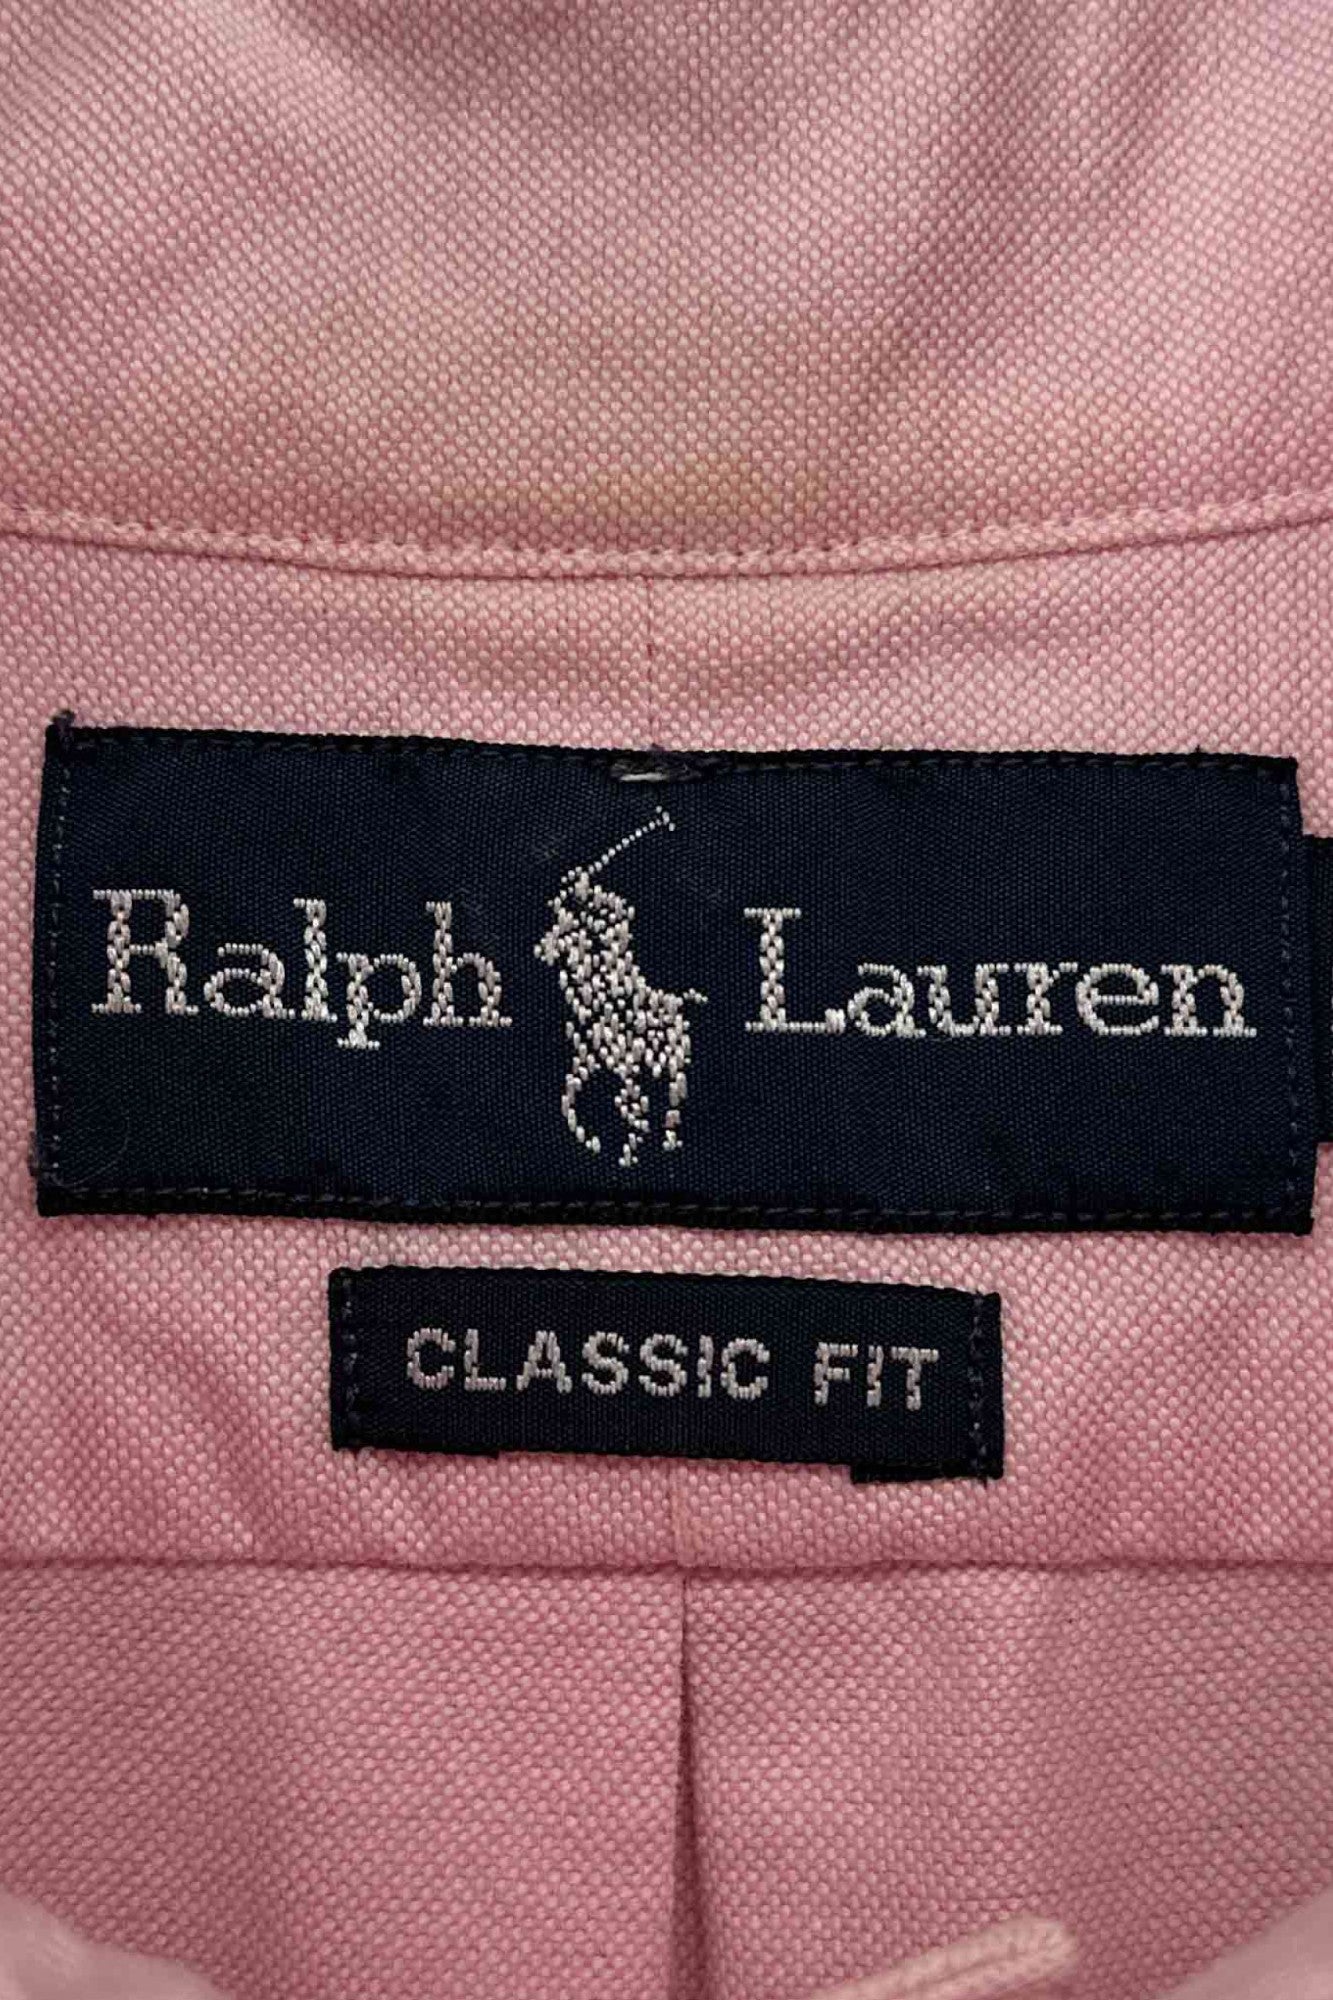 90's Ralph Lauren pink shirt